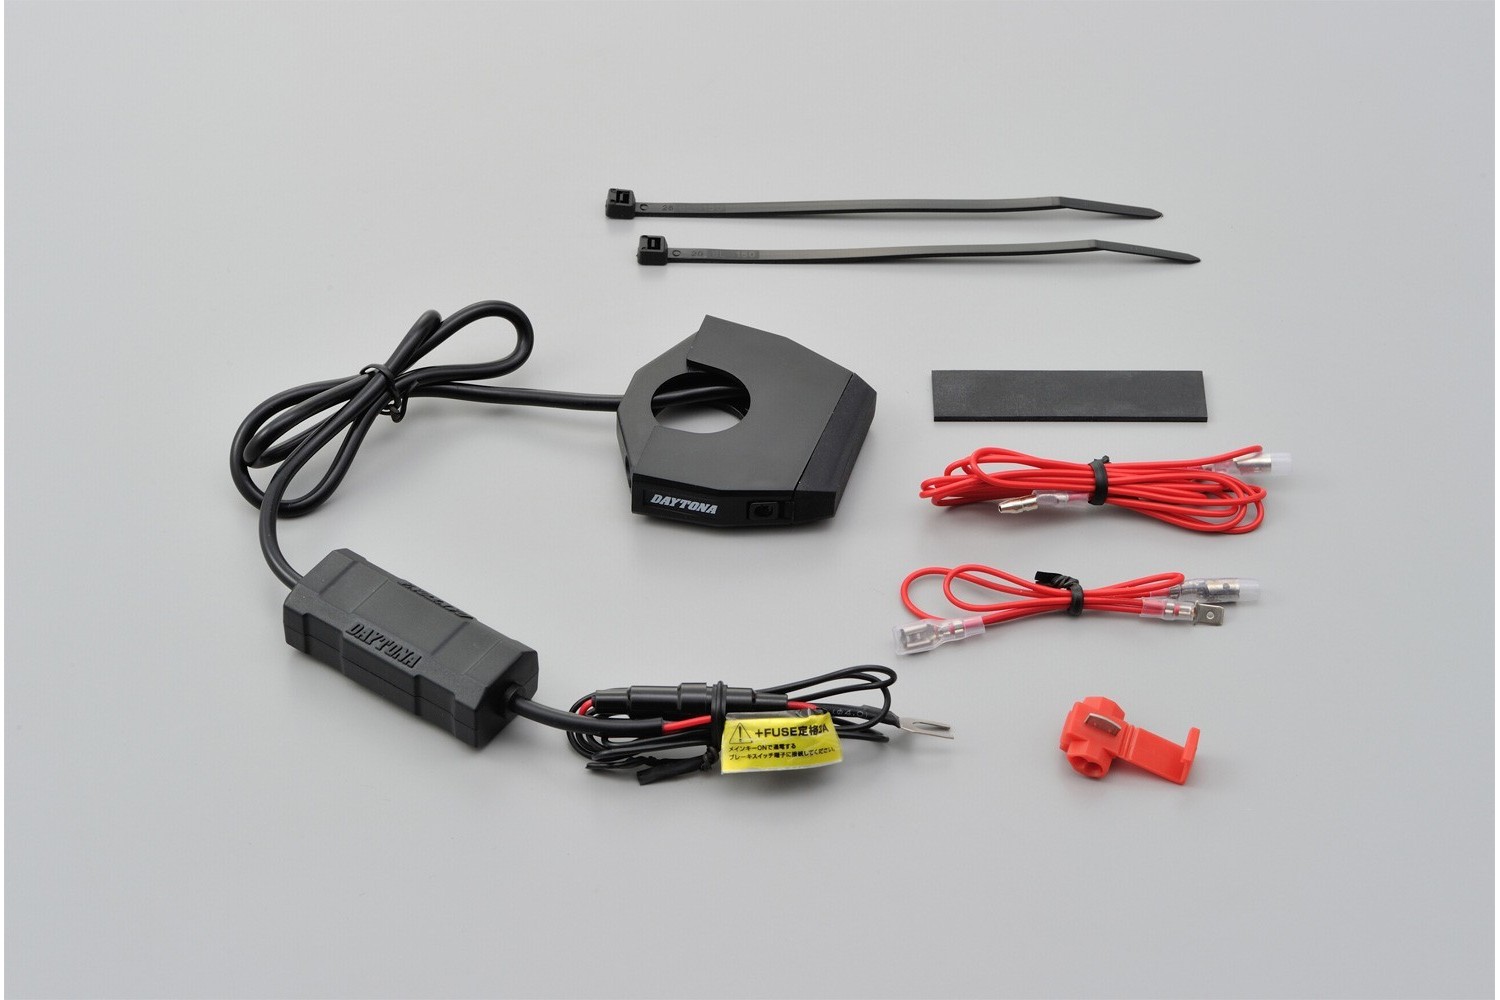 Motorrad USB Ladegerät mit 2 Steckplätzen plus digitale Voltanzeige